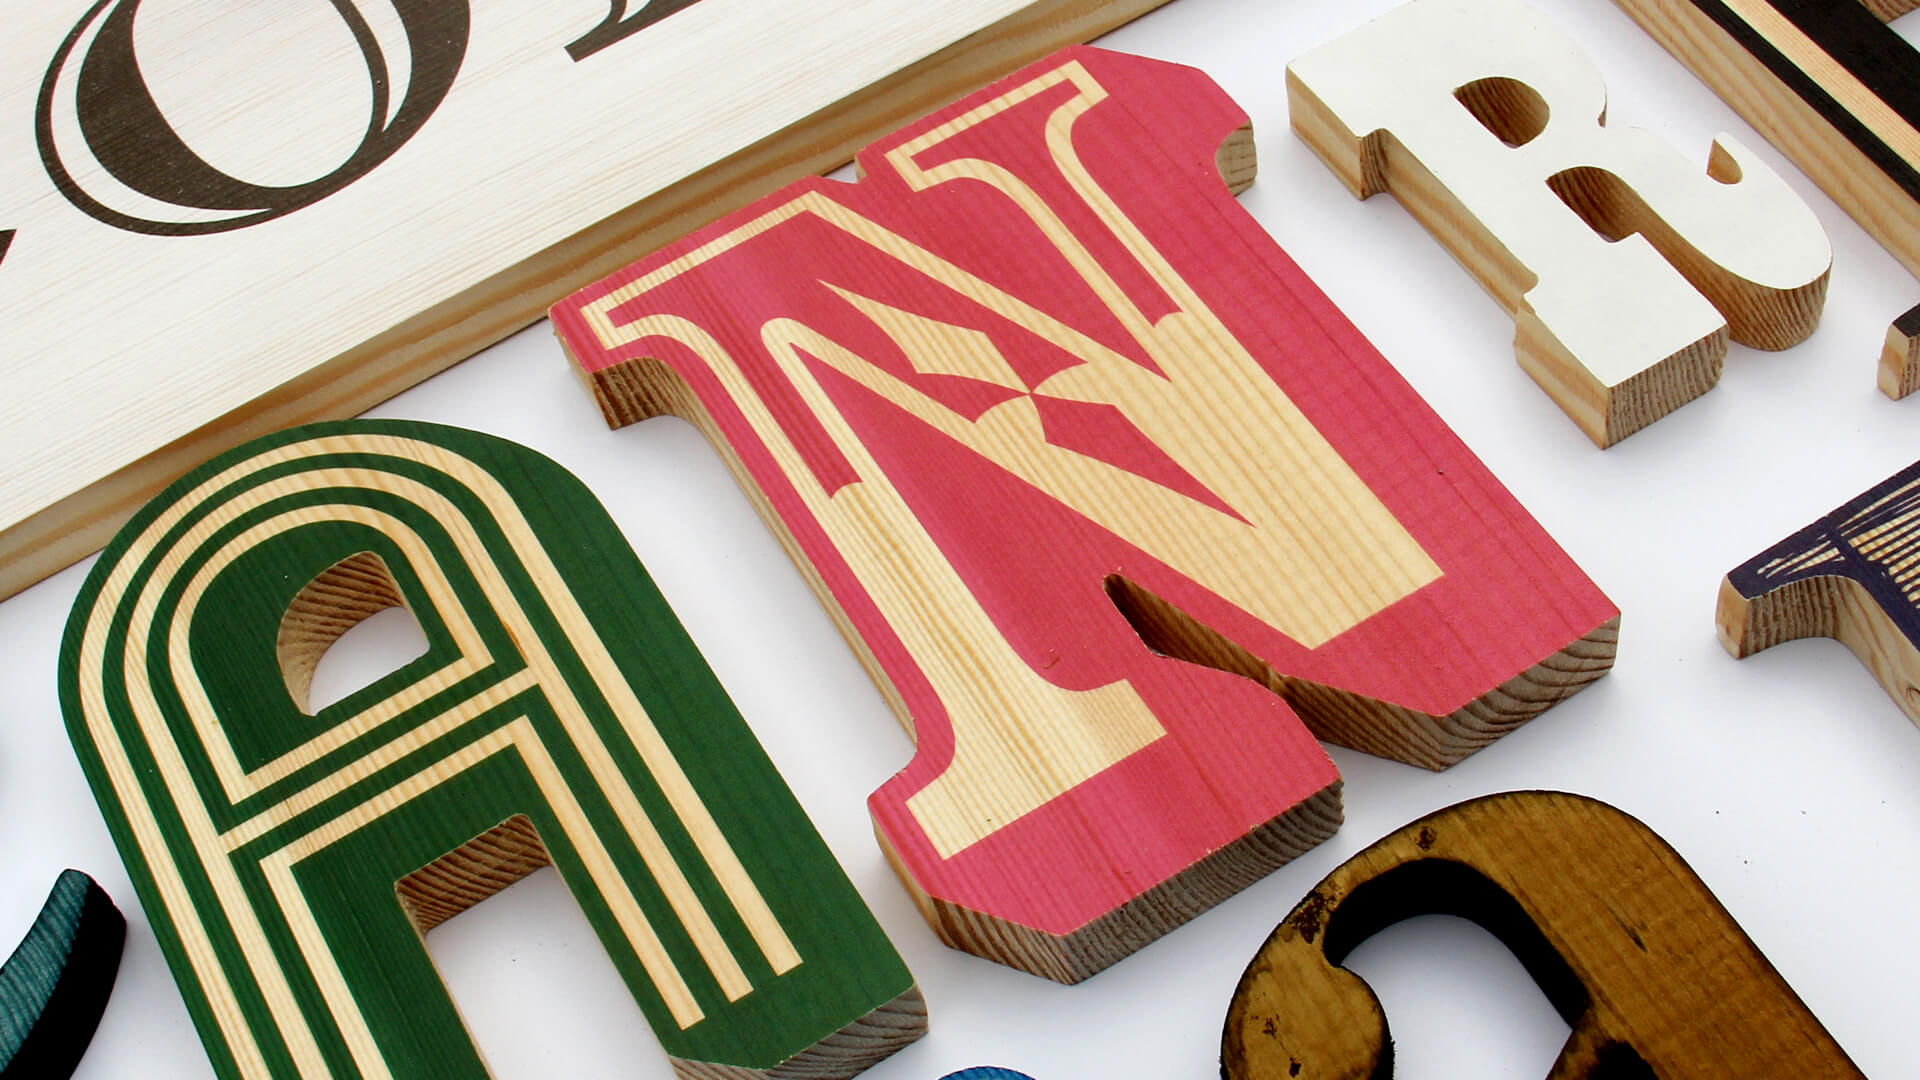 letras de madera - letras-decorativas-de-madera-cartas-decorativas-de-madera-cartas-decorativas